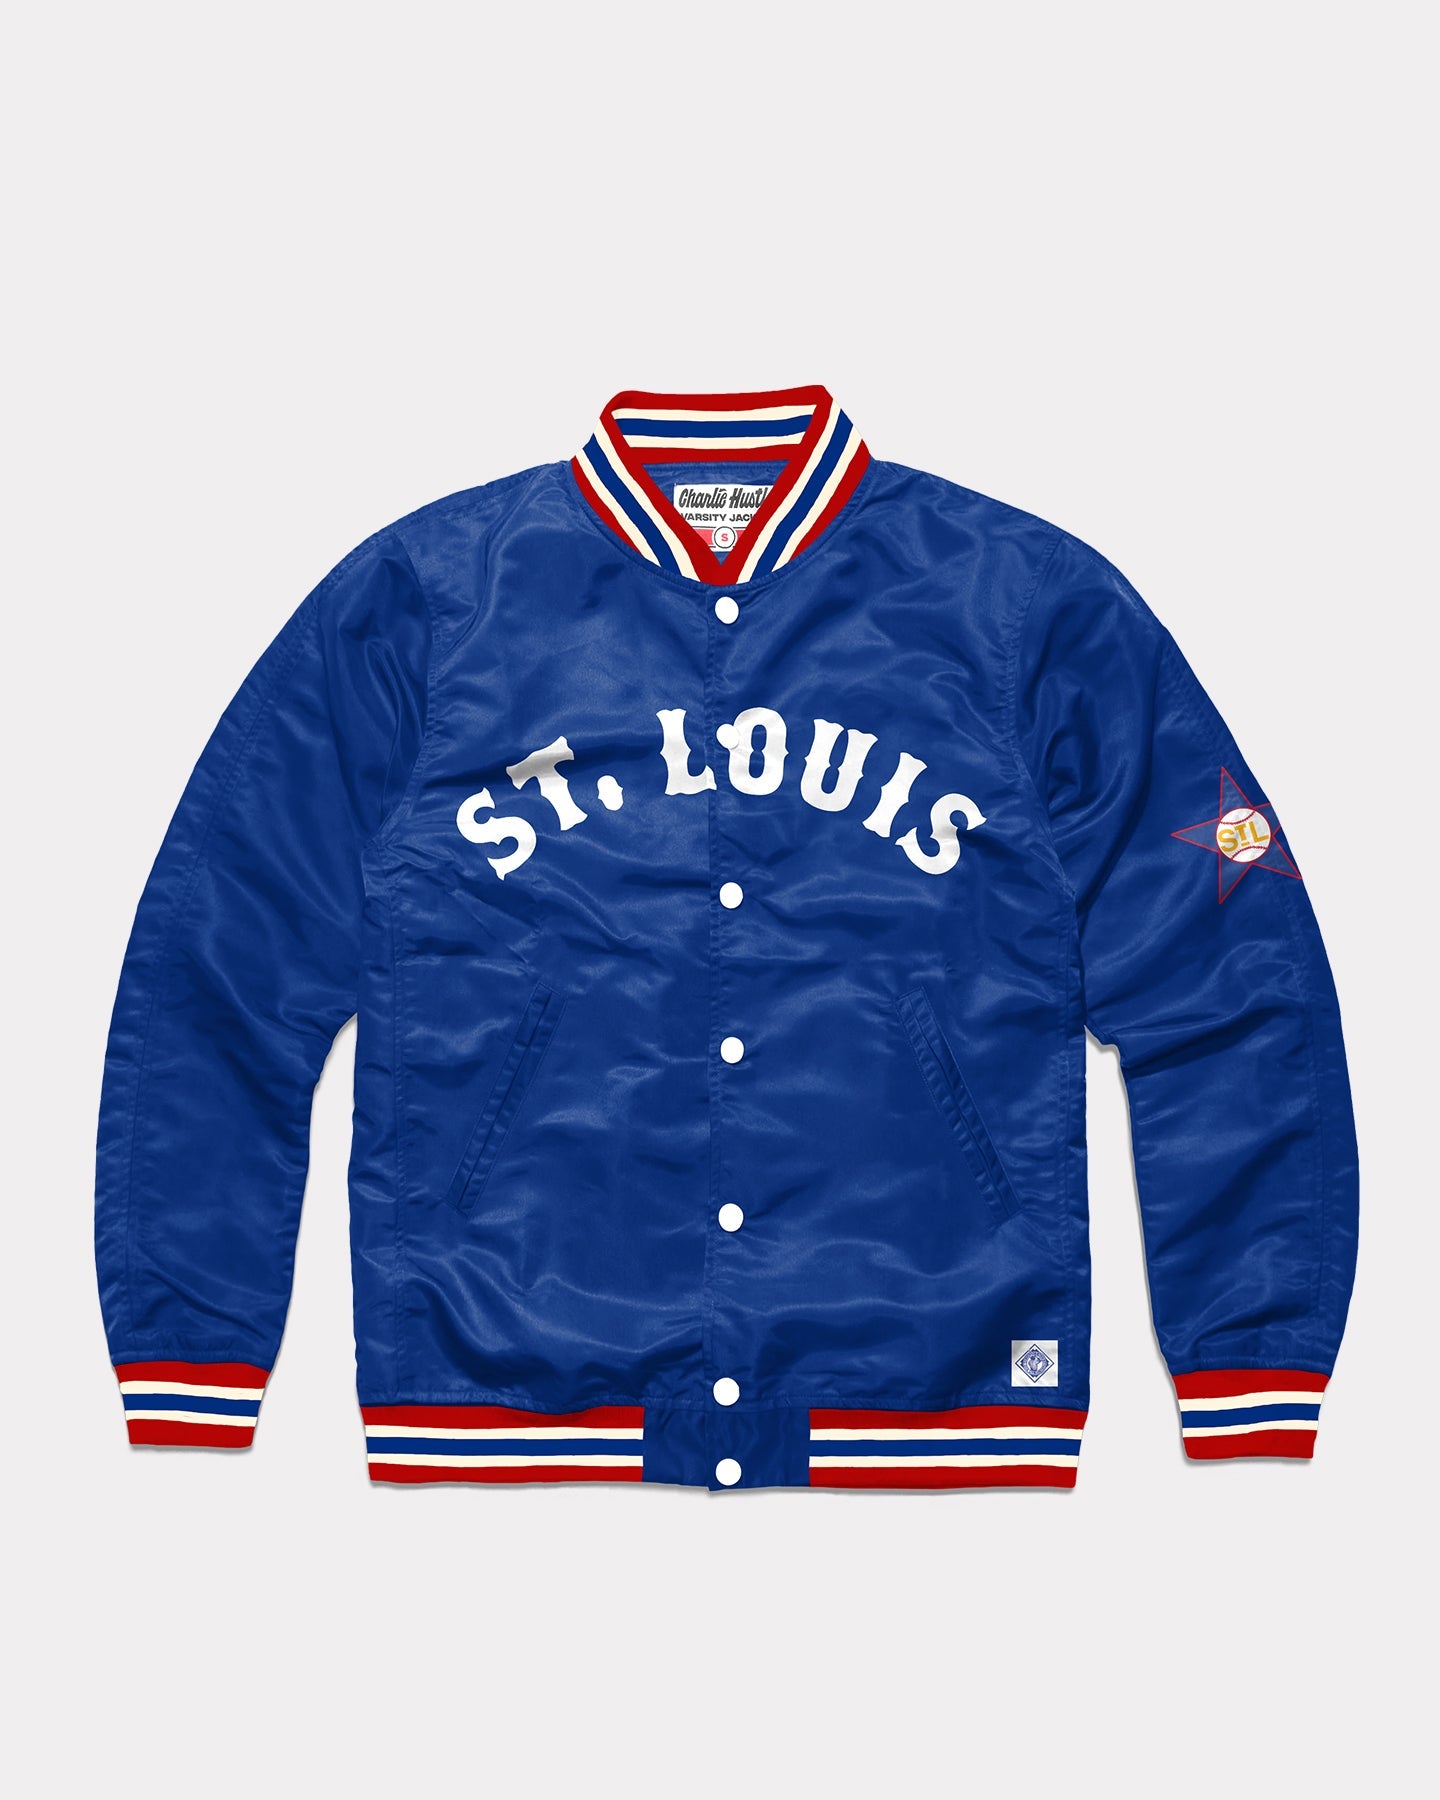 west louis, Jackets & Coats, Navy Blue West Louis Jacket